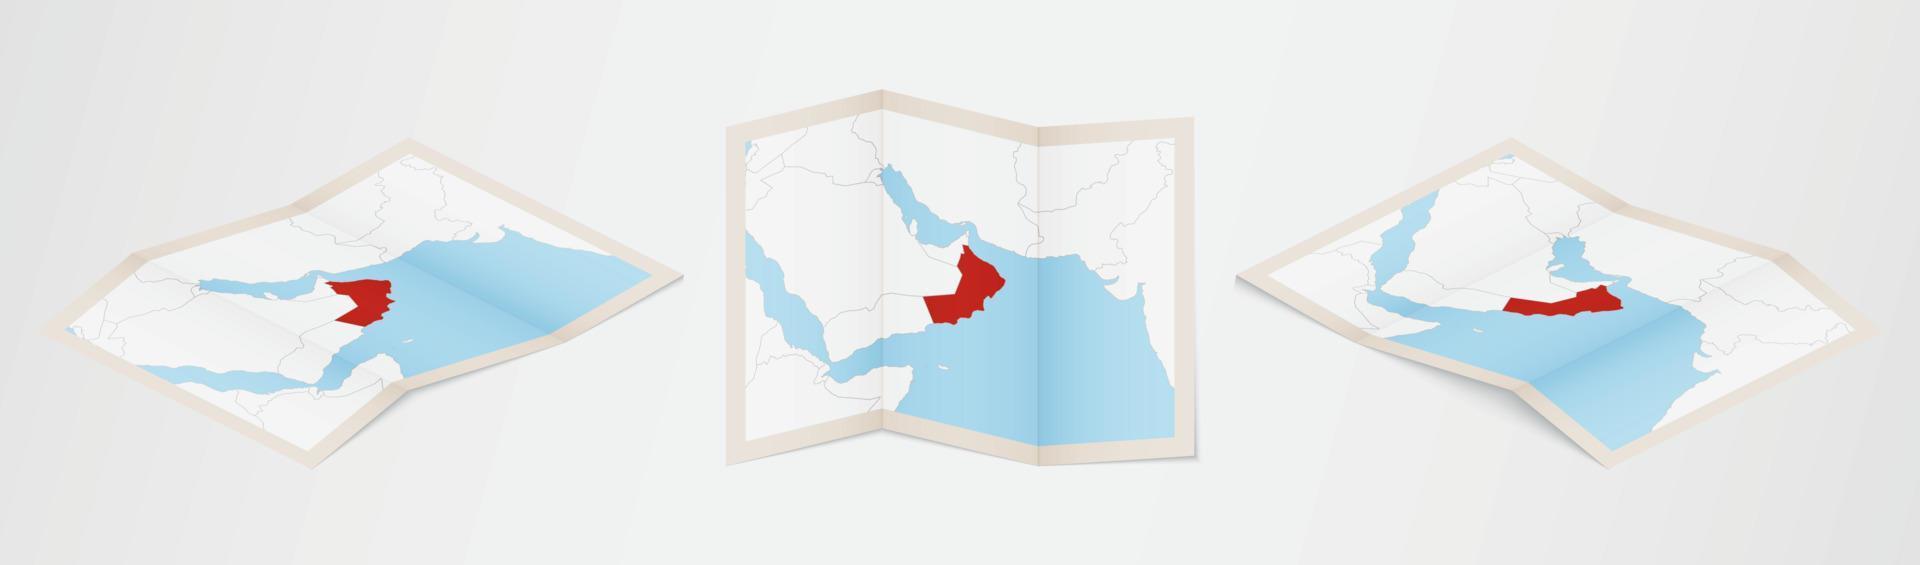 mapa plegado de omán en tres versiones diferentes. vector